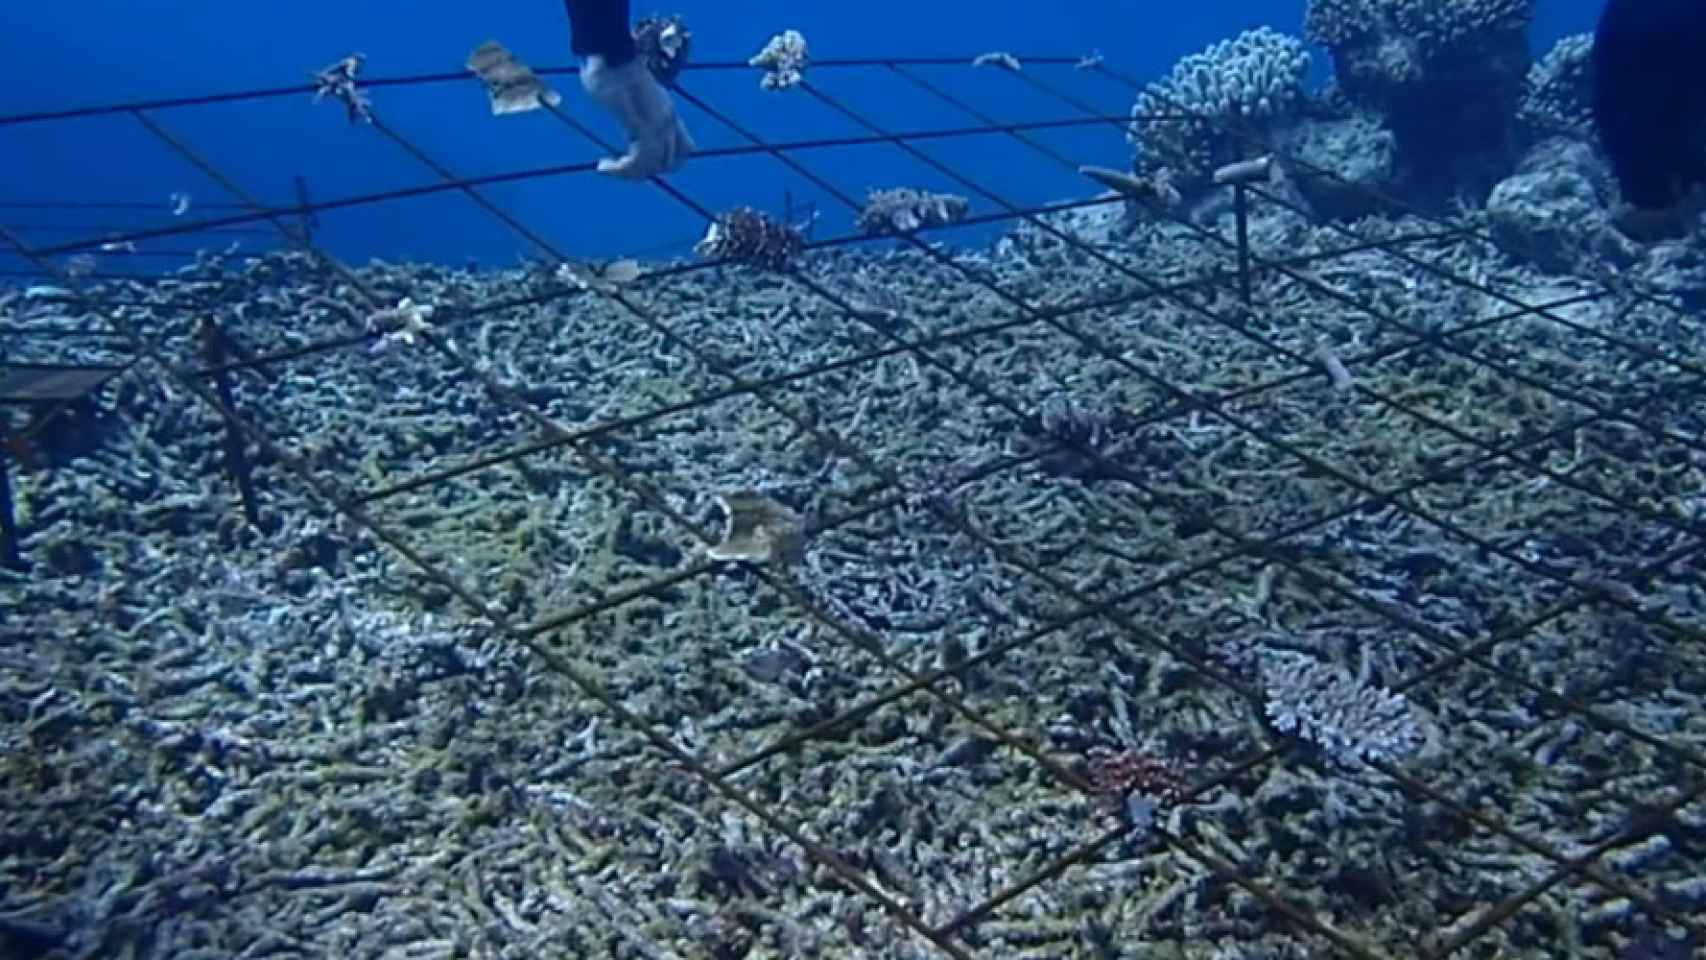 biorock impulsos electricos arrecifes de coral